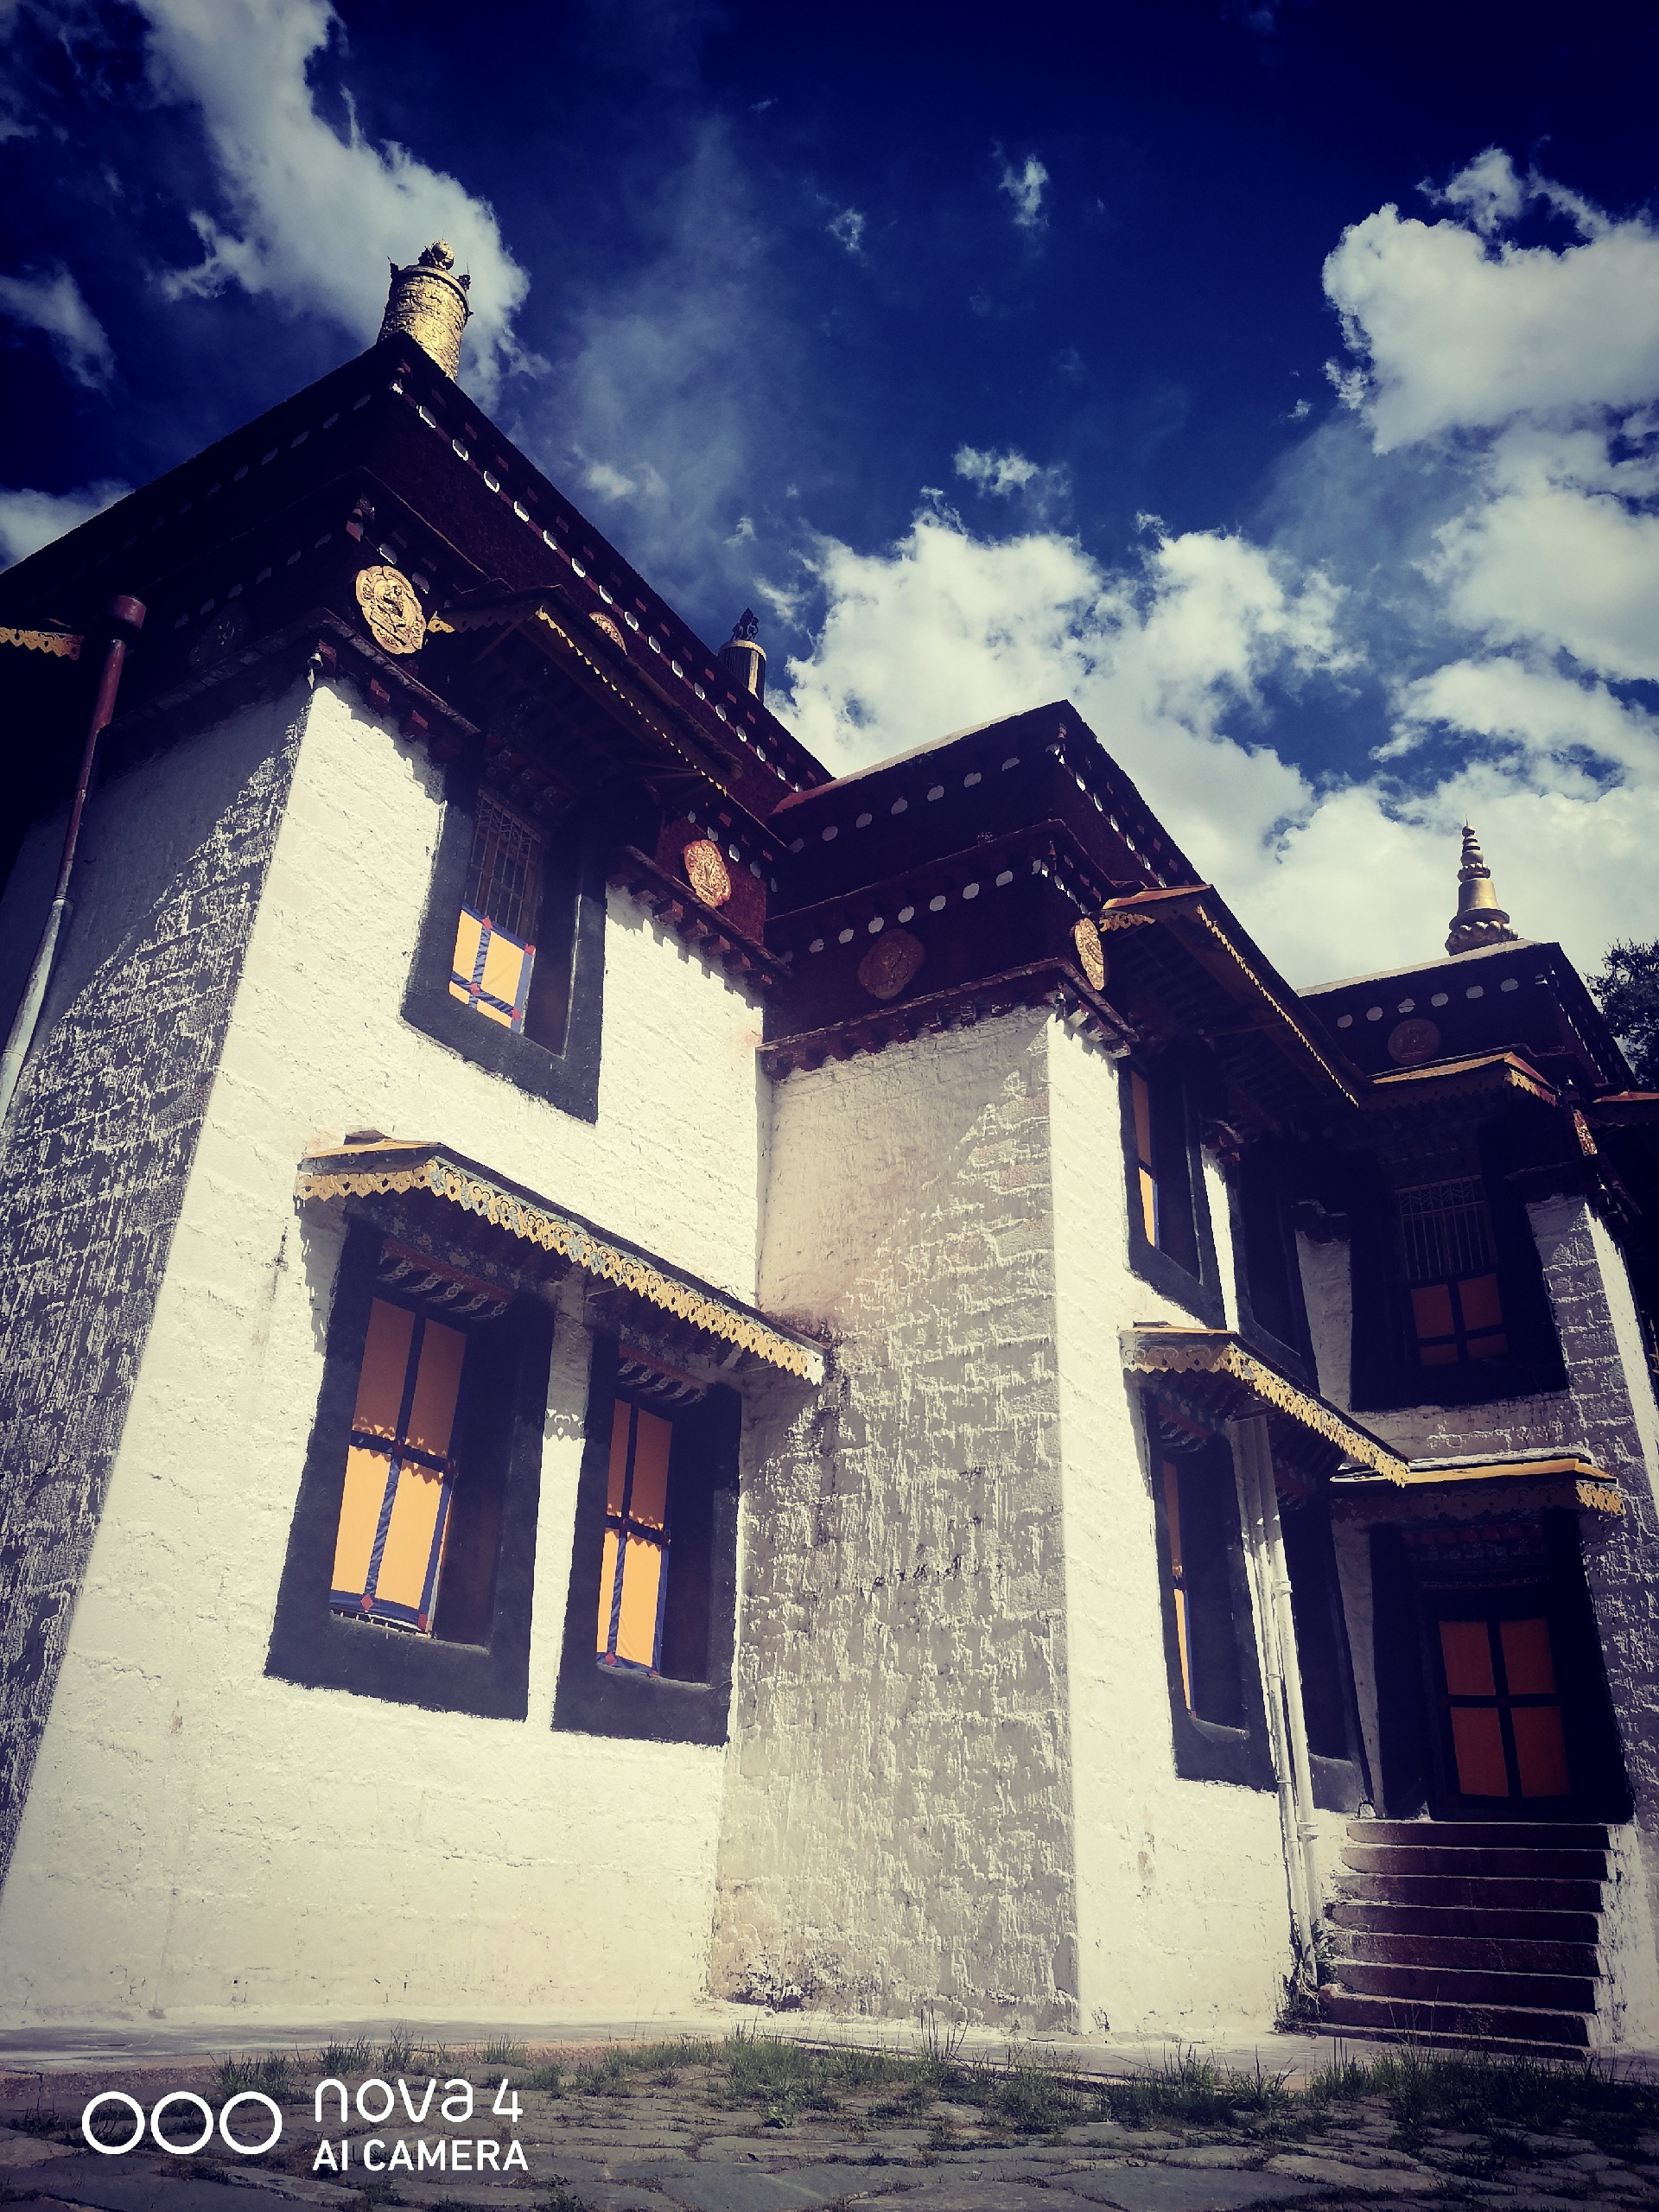 罗布林卡一个体现藏族地区的王家园林风格，历史悠久  景色宜人